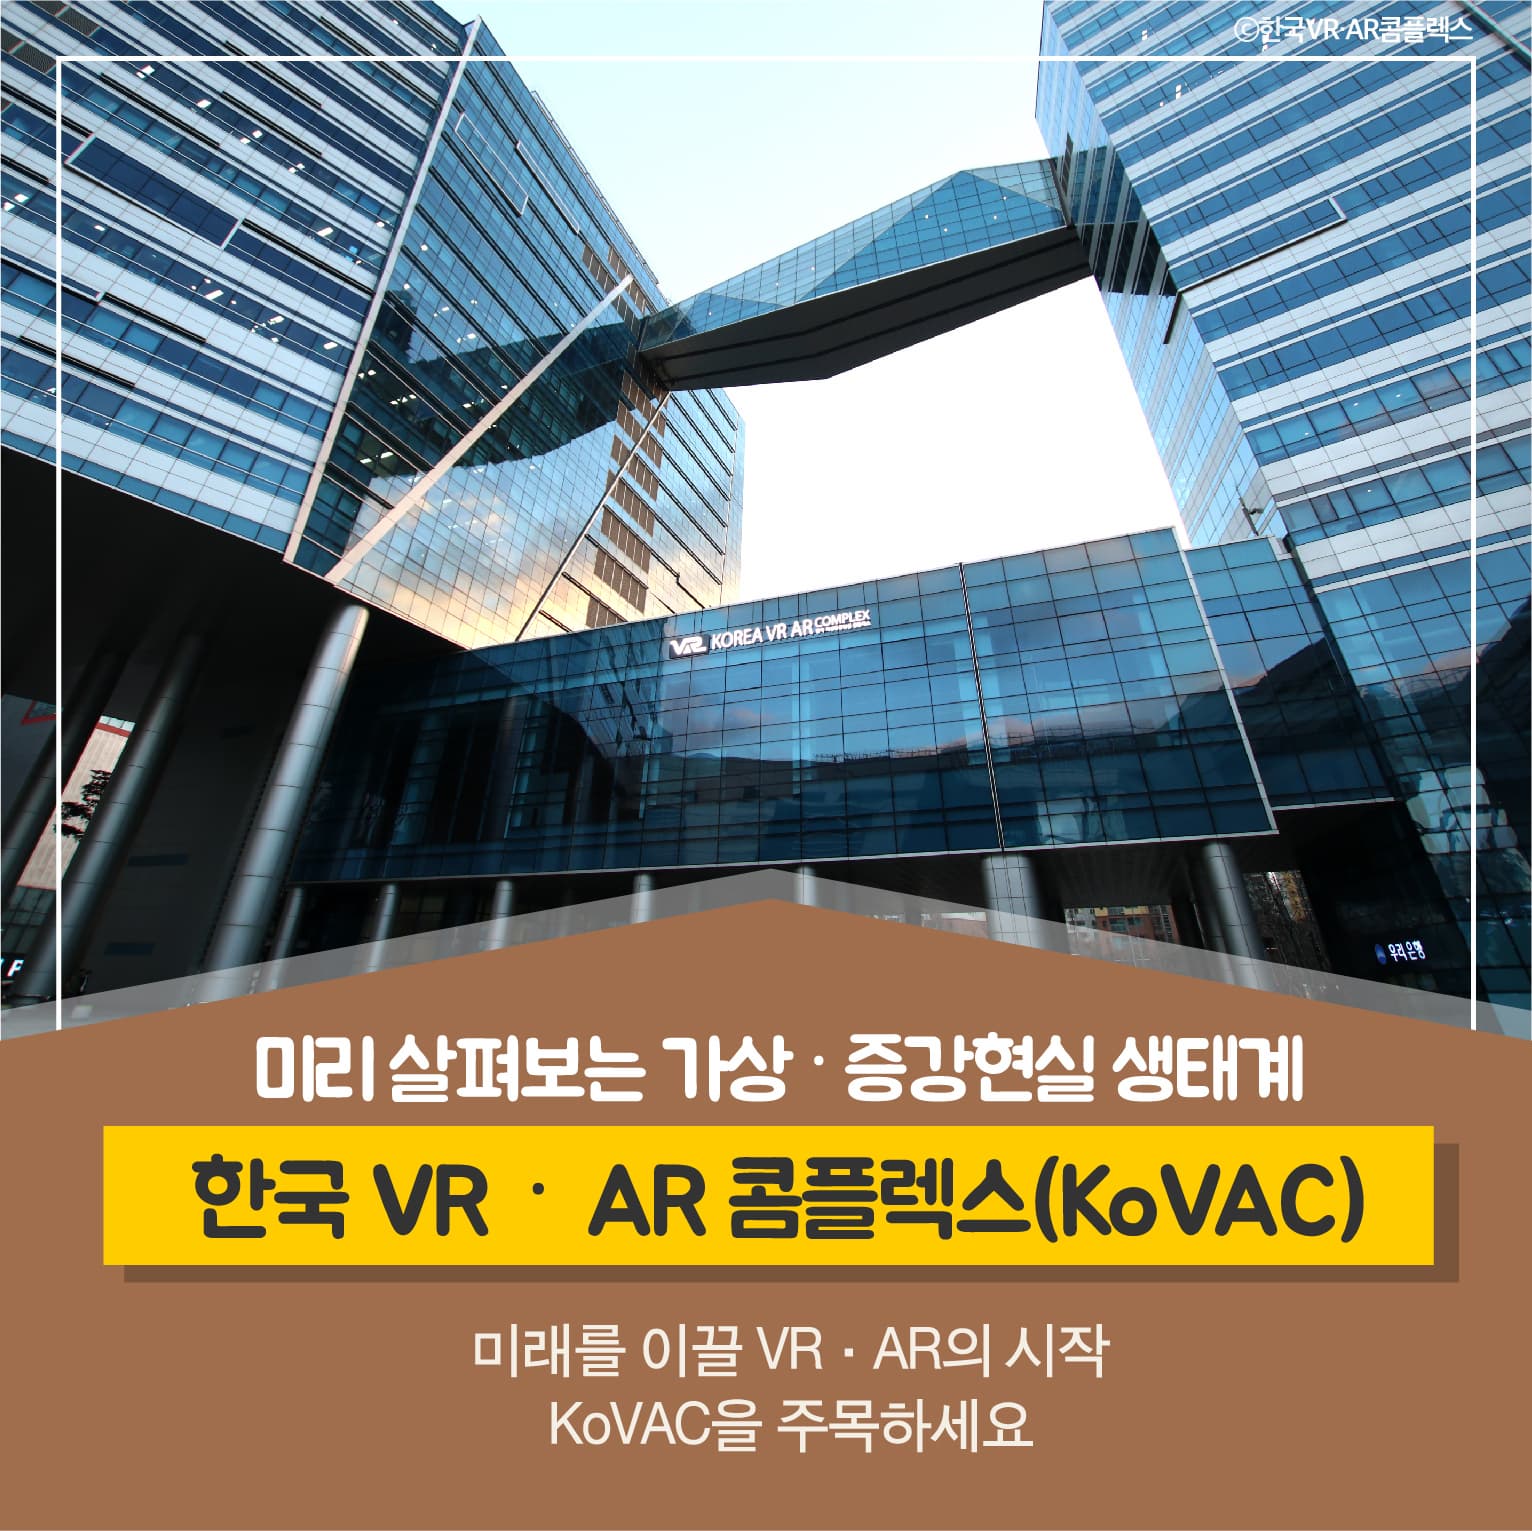 미리 살펴보는 가상, 증강현실 생태계
한국 VR, AR 콤플렉스 (KoVAC)
미래를 이끌 VR, AR의 시작
KoVAC을 주목하세요